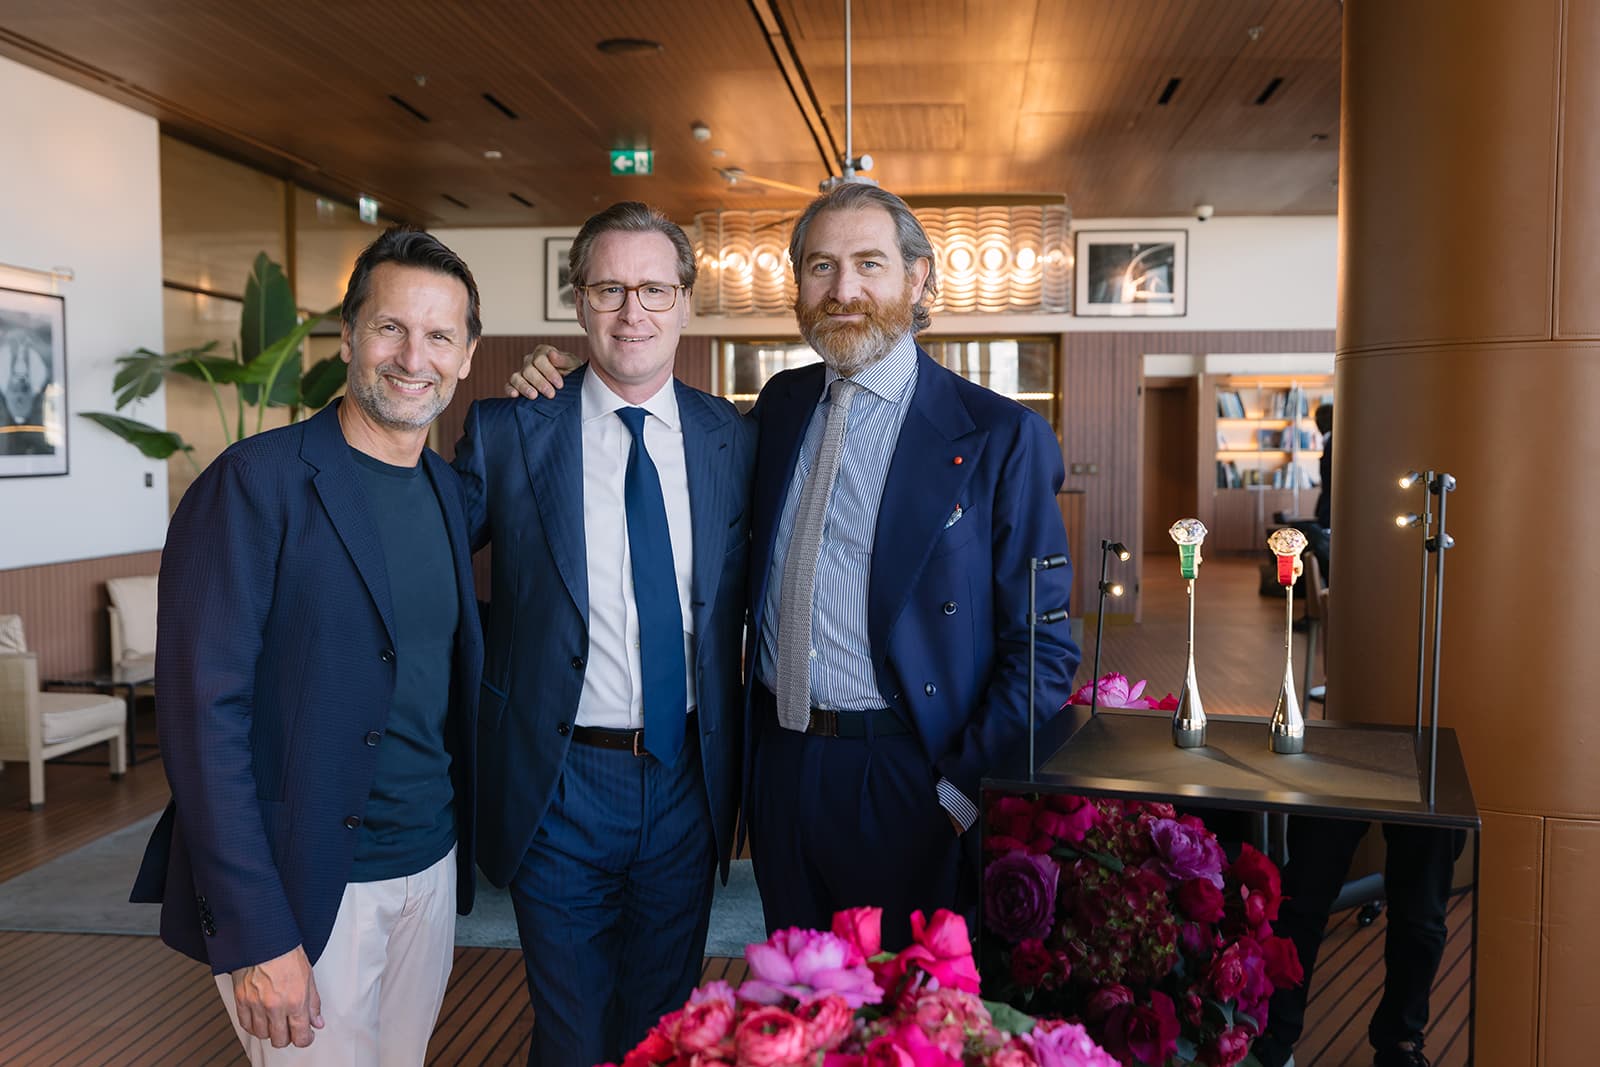 Слева направо: Максимилиан Бюссер, основатель MB&F, Винсент Рейнс, управляющий директор Bulgari в регионе MEA, и Фабрицио Буонамасса Стиглиани, главный дизайнер часов Bulgari